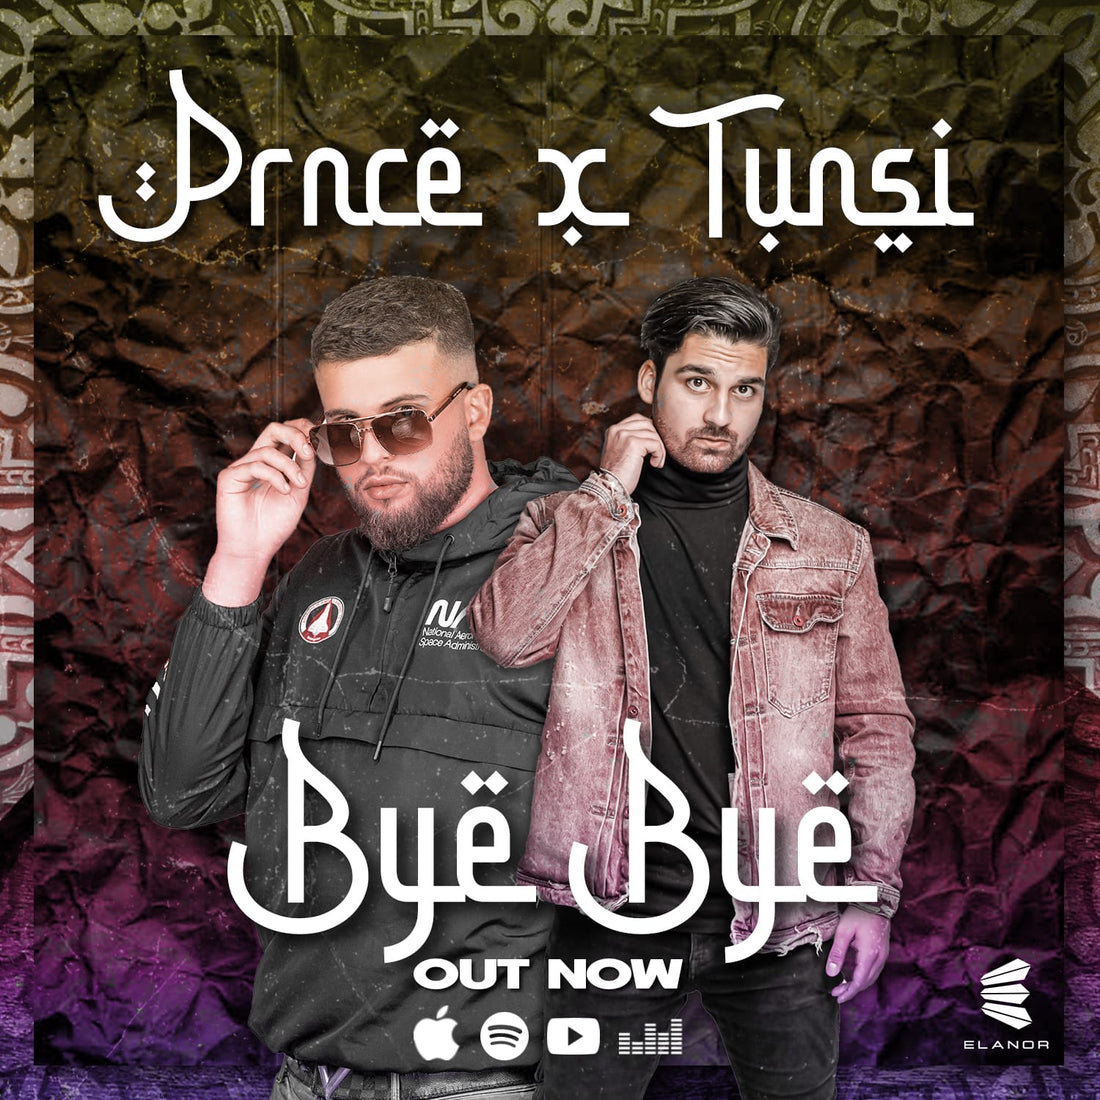 Prnce & Tunsi - Bye Bye